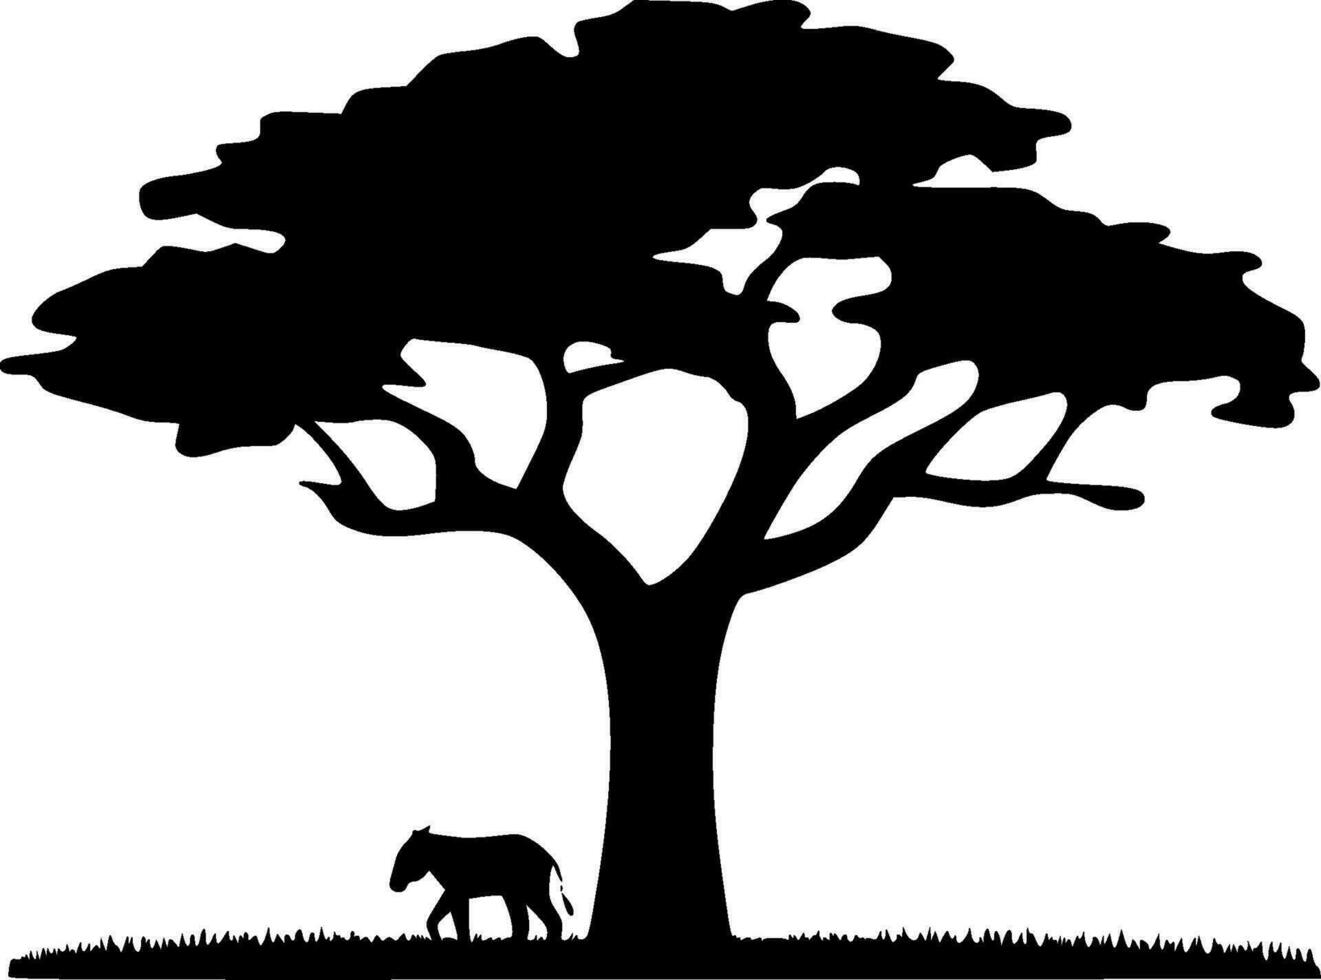 Afrika - - minimalistisch und eben Logo - - Vektor Illustration